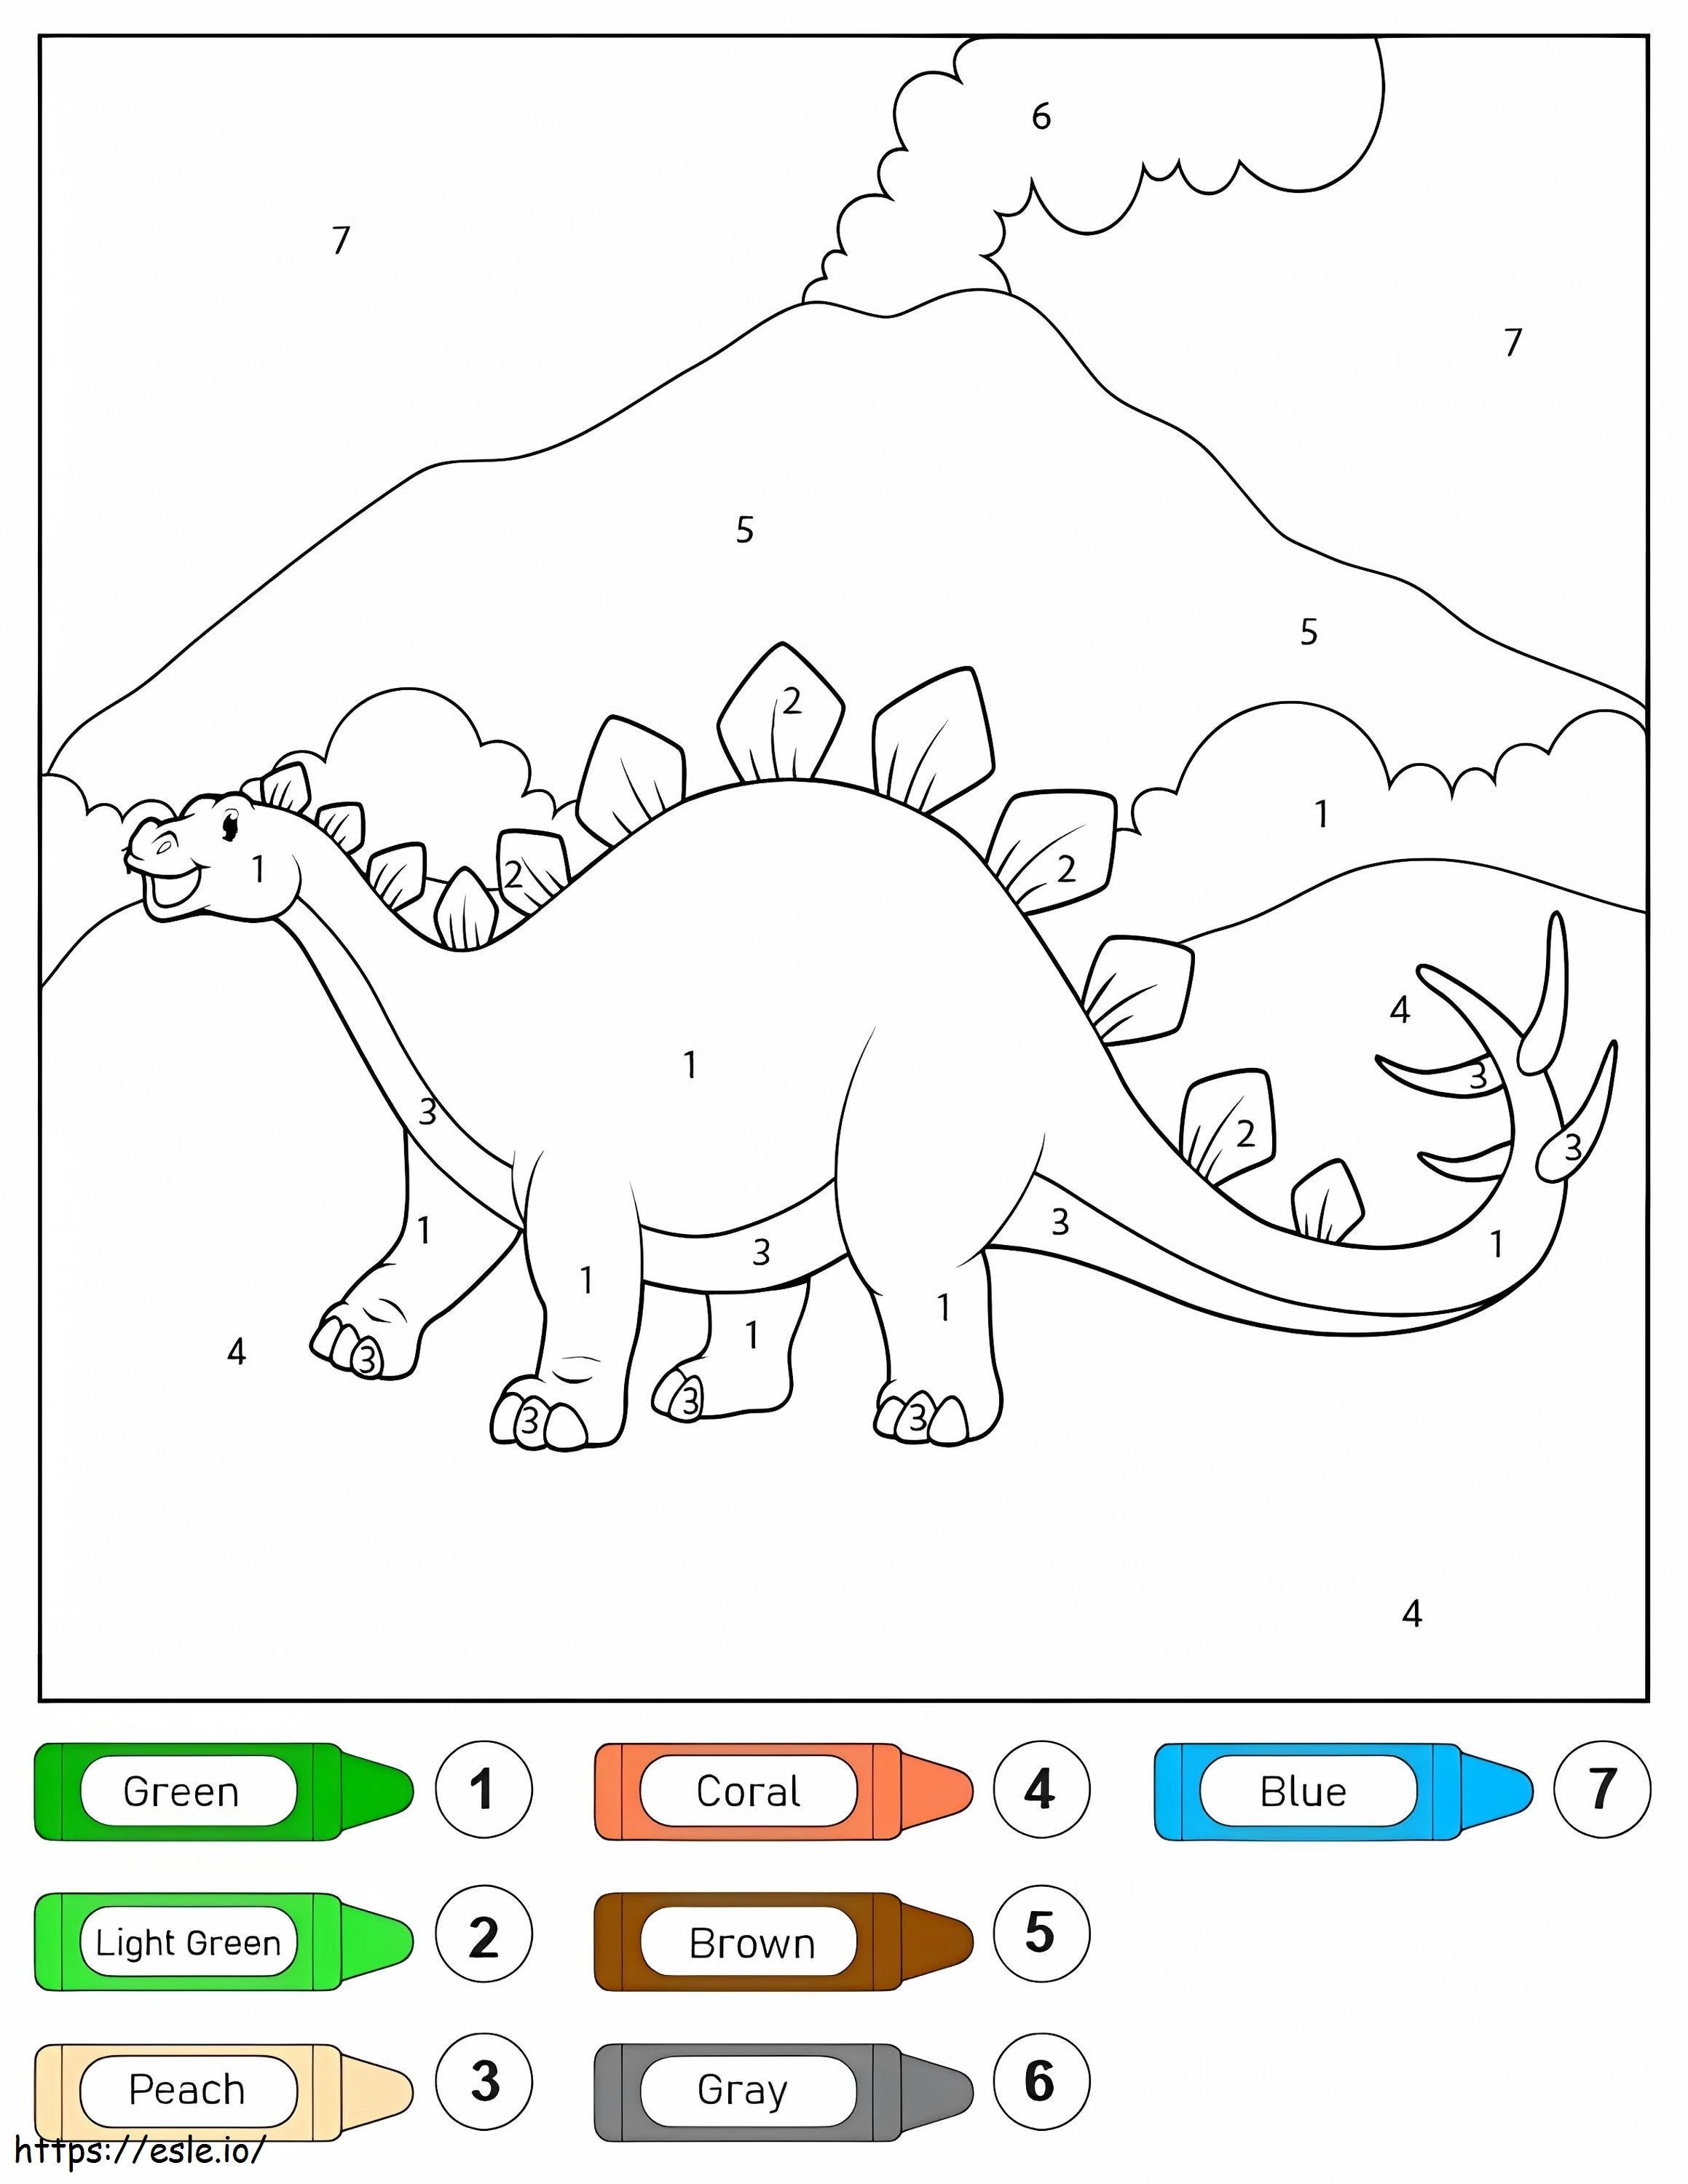 Stegosaurus Dinozor Sayıya Göre Renk boyama